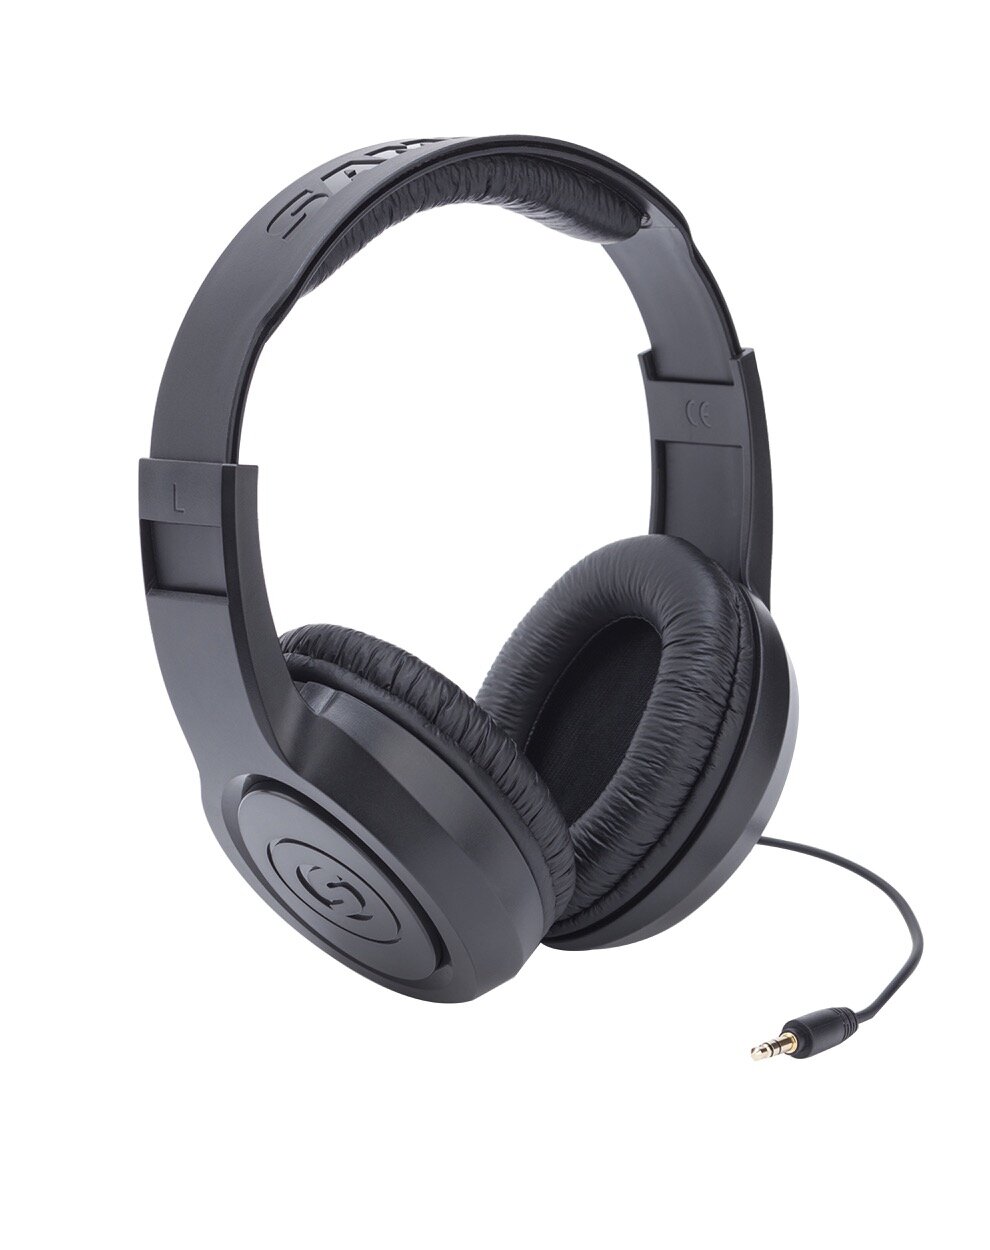 SR350 Over Ear Stereo Headphones - Samson Samson SR350